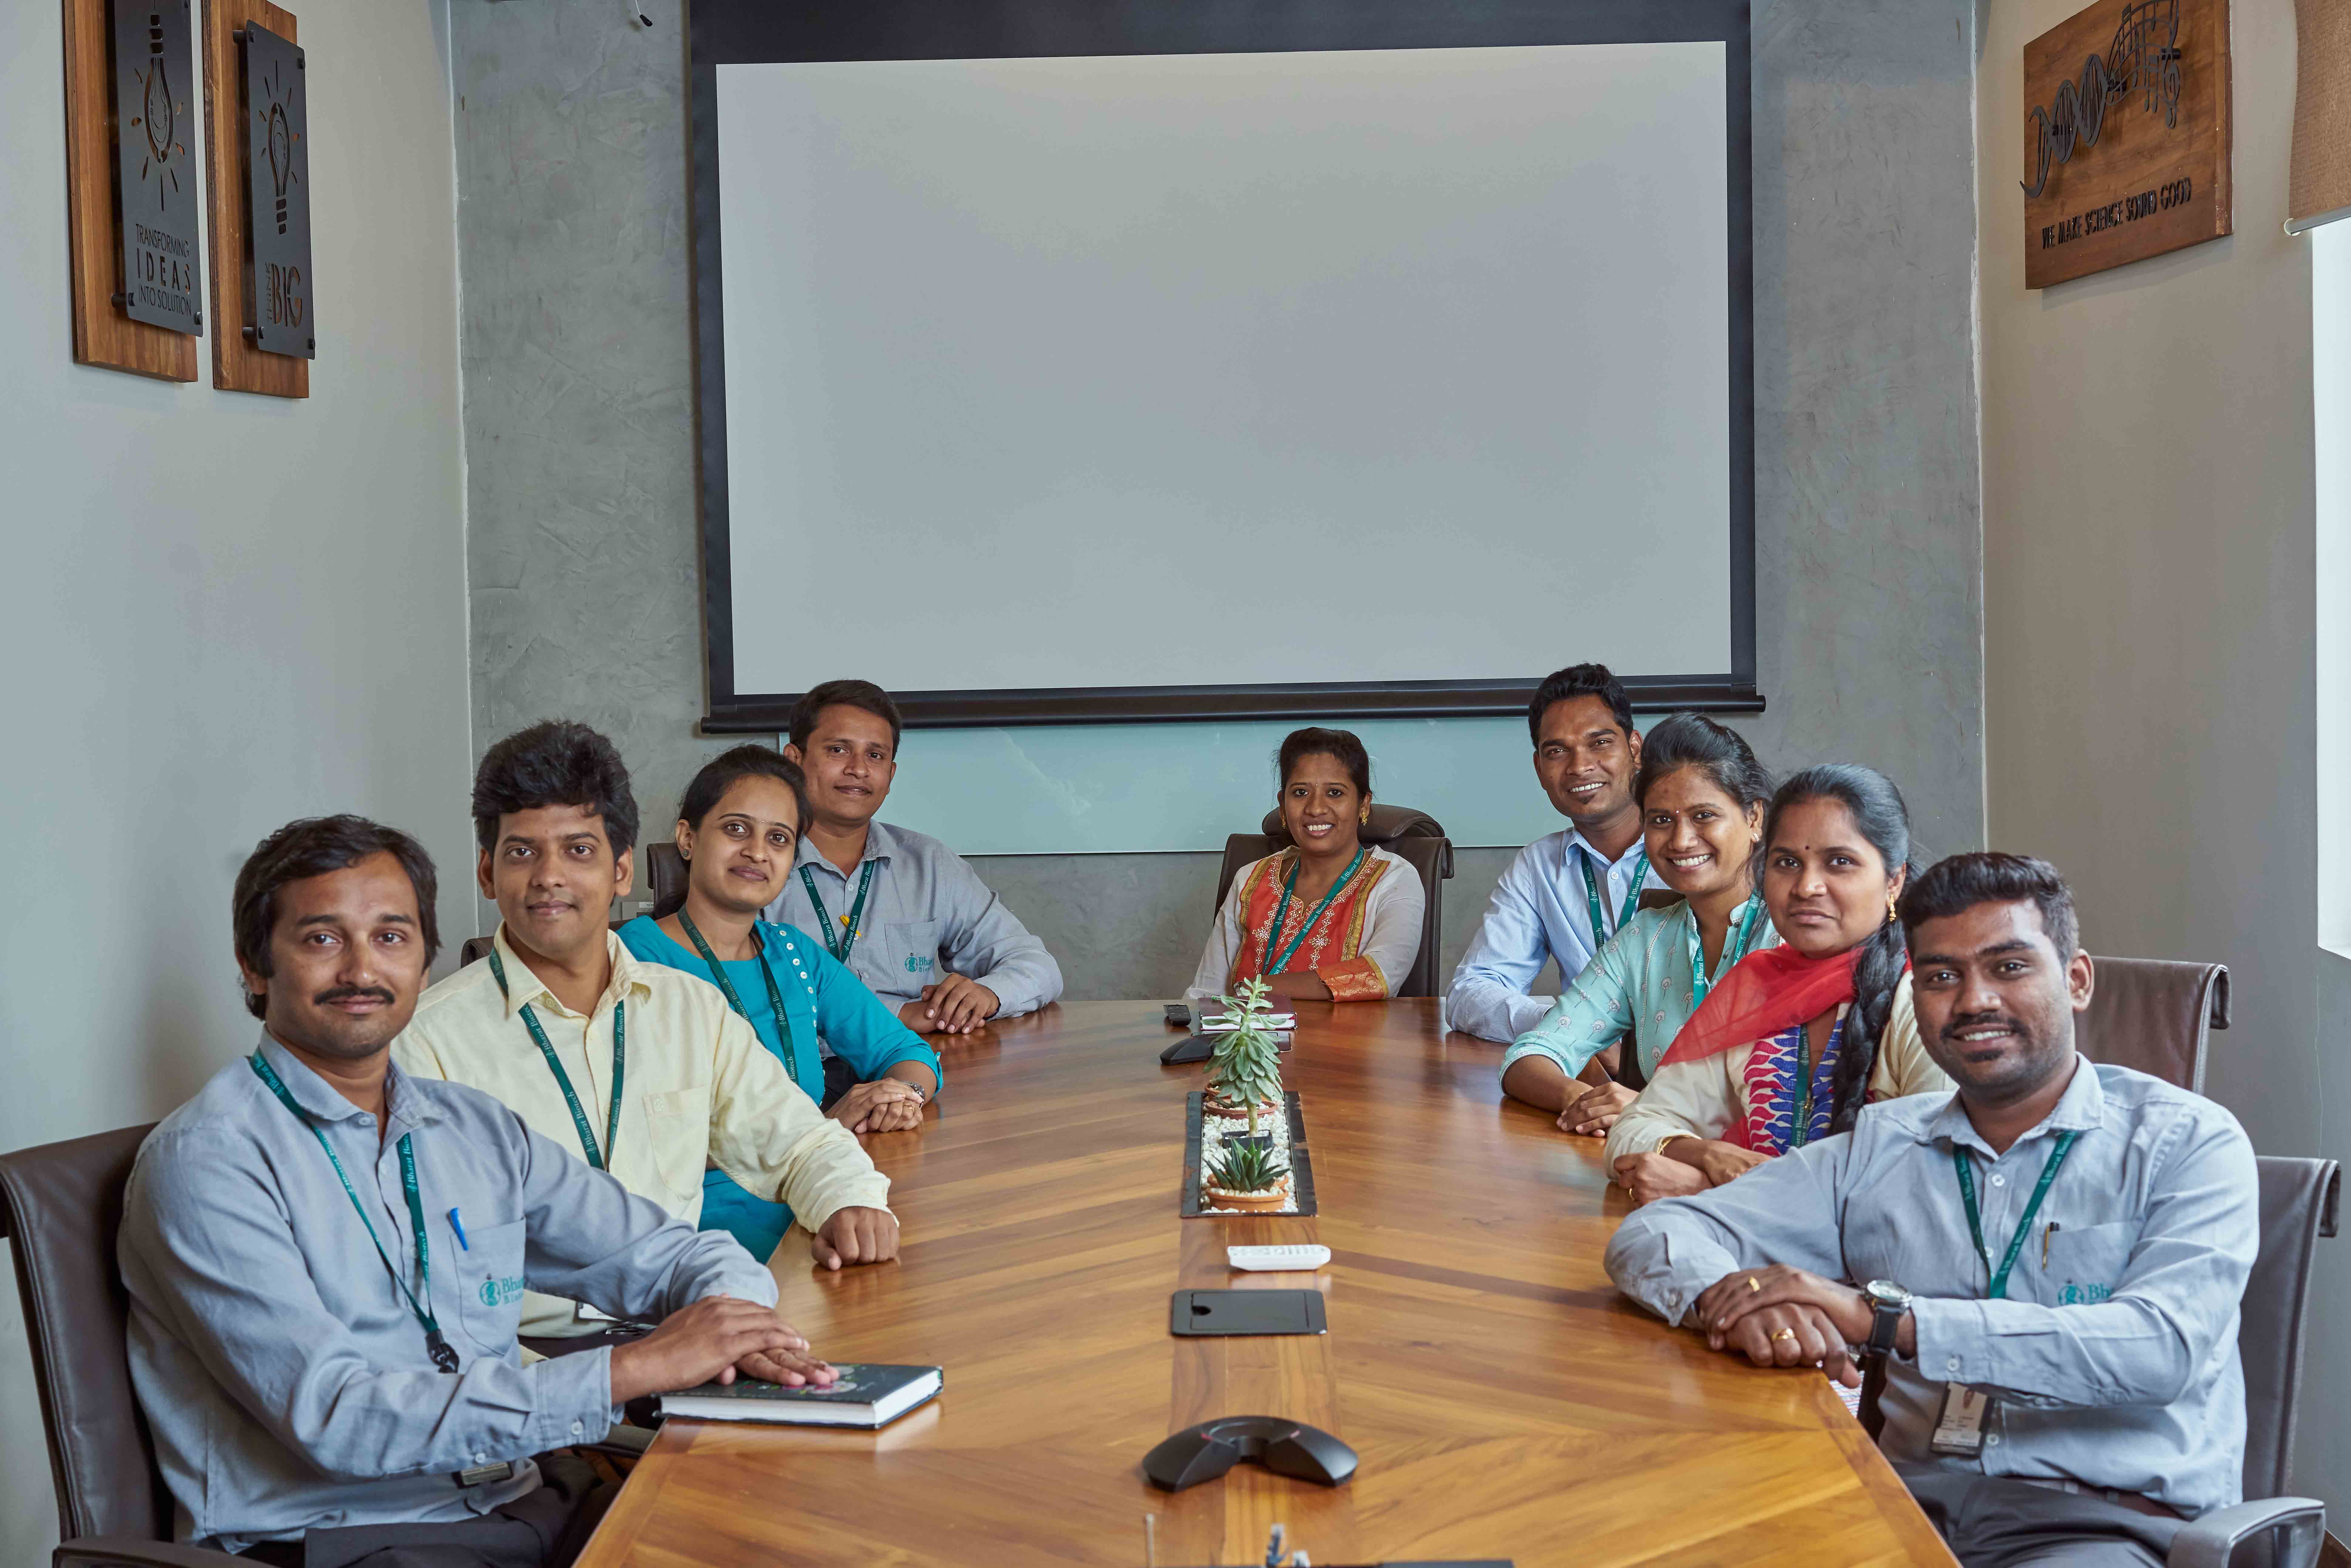 Employement  engagement at Bharat biotech